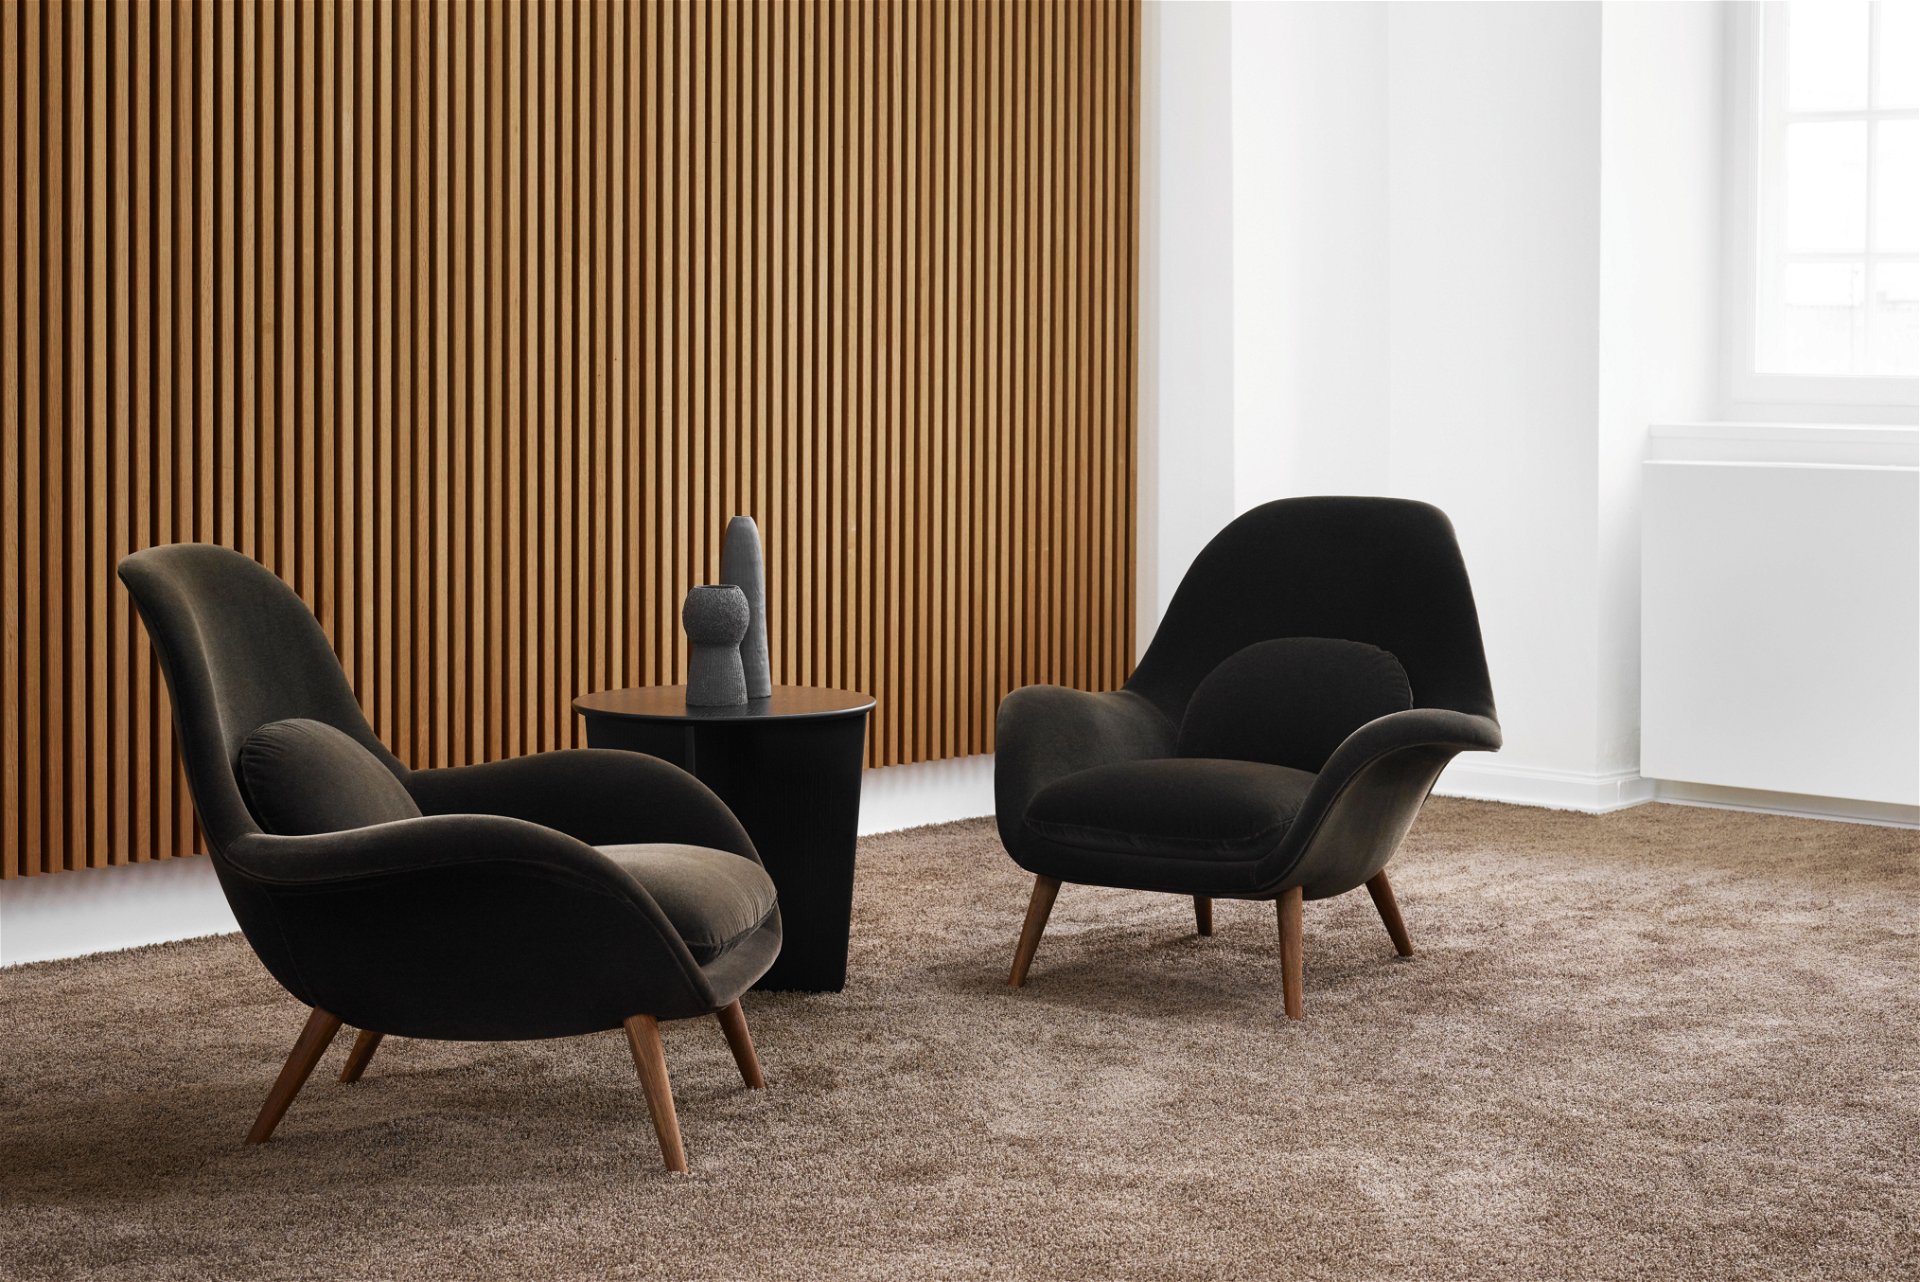 Runde Sache: Sanfte Kurven und dunkle Farbtöne zeichnen die »Swoon Collection« für Fredericia Furniture aus.